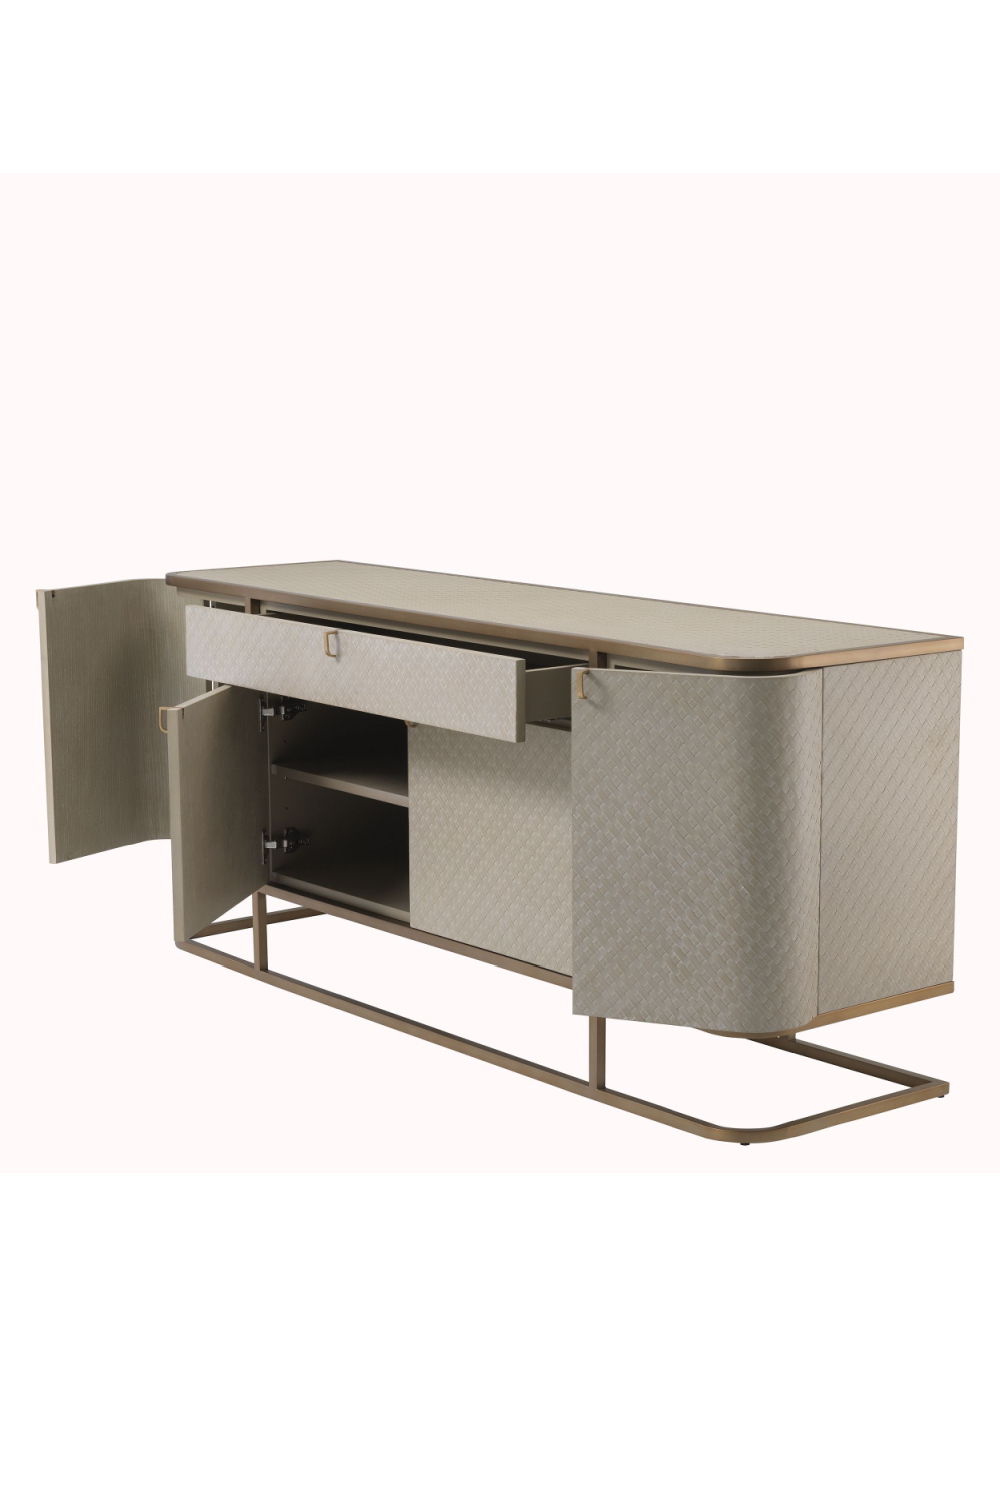 Woven Oak Brass Dresser | Eichholtz Napa Valley | Eichholtz Retailer